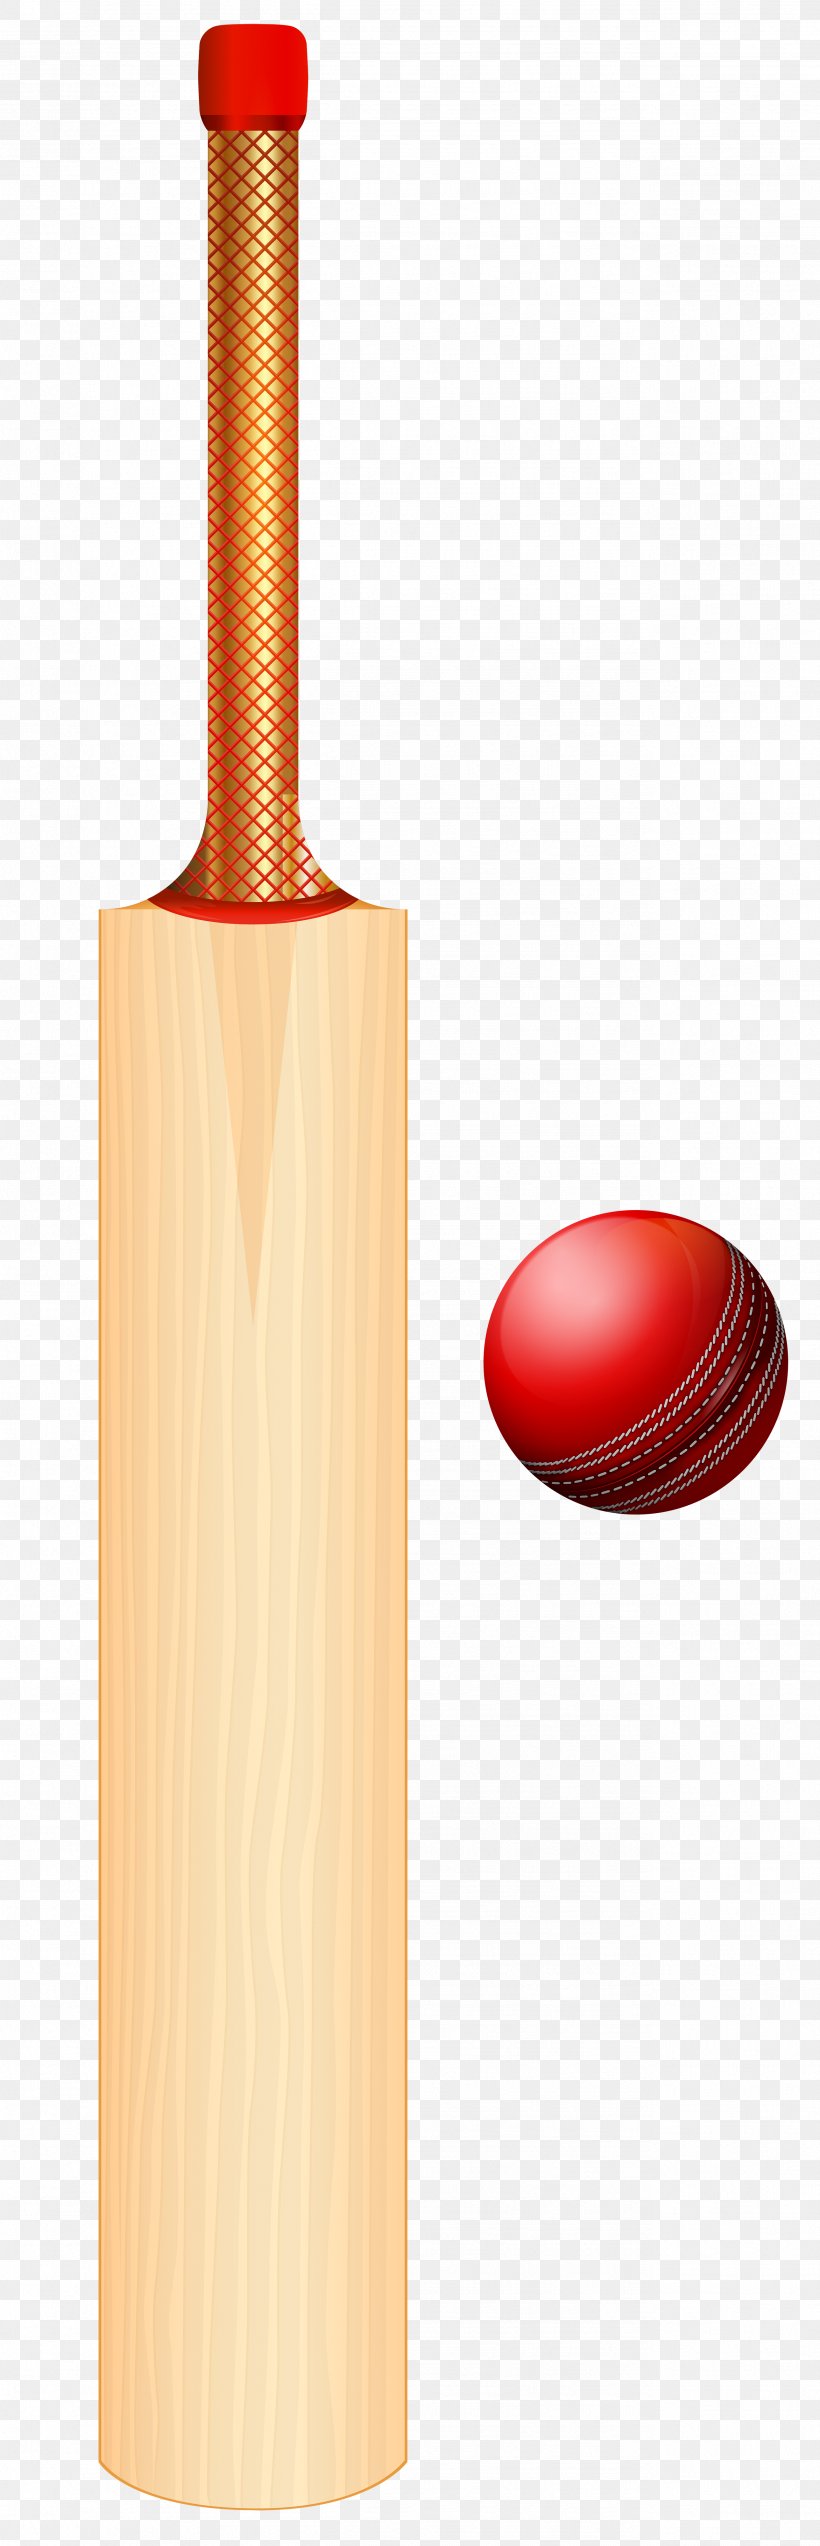 Cricket Bats Batting Cricket Balls Clip Art, PNG, 2576x8000px, Cricket Bats, Ball, Baseball Bats, Batandball Games, Batting Download Free